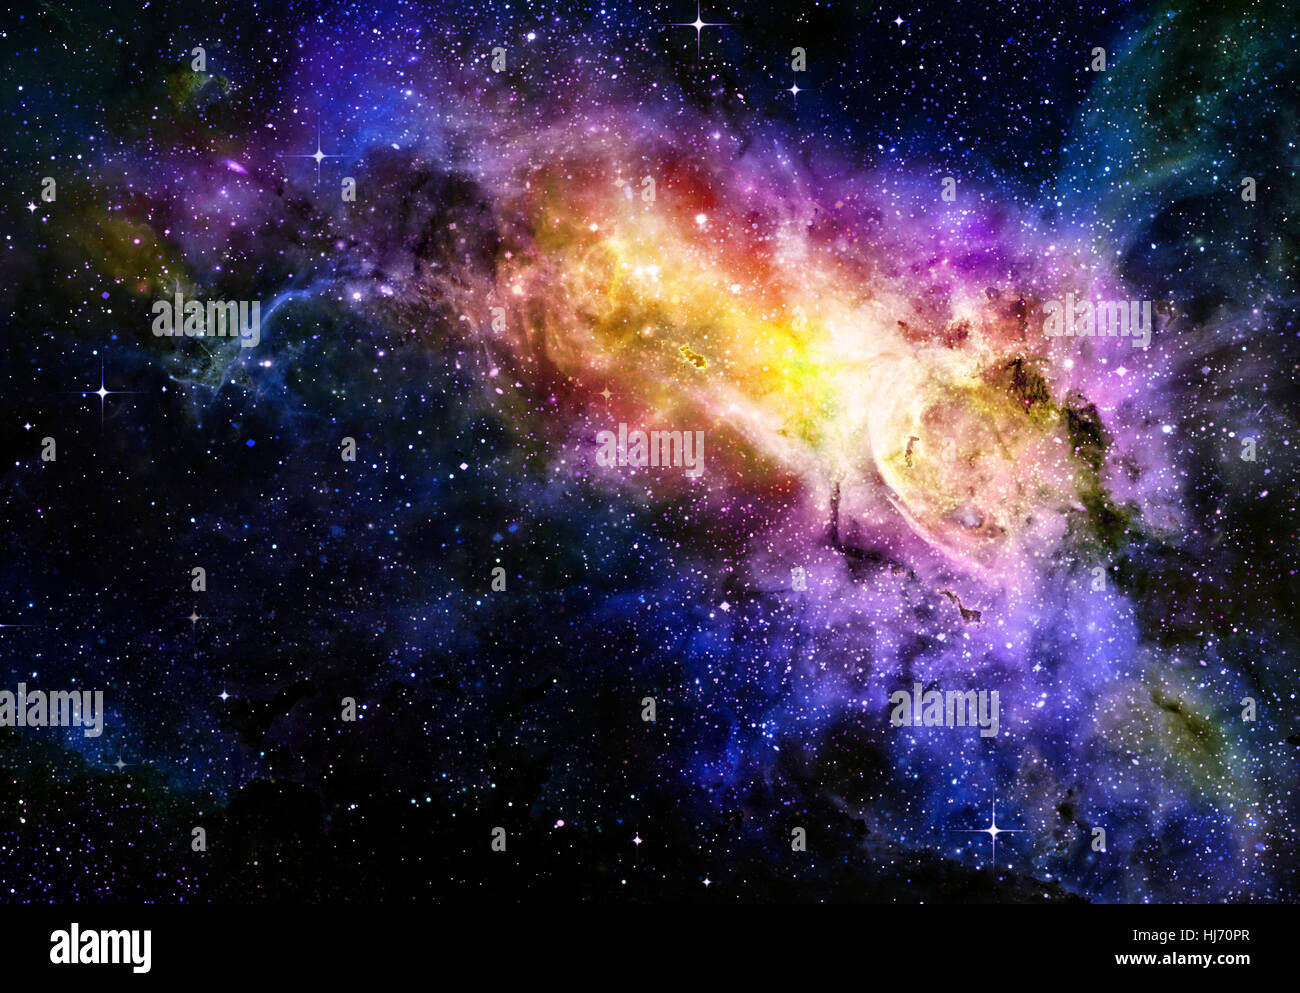 L'espace, de profondeur, galaxie, étoiles, des astérisques, extérieur, ciel, sky, toile, Banque D'Images